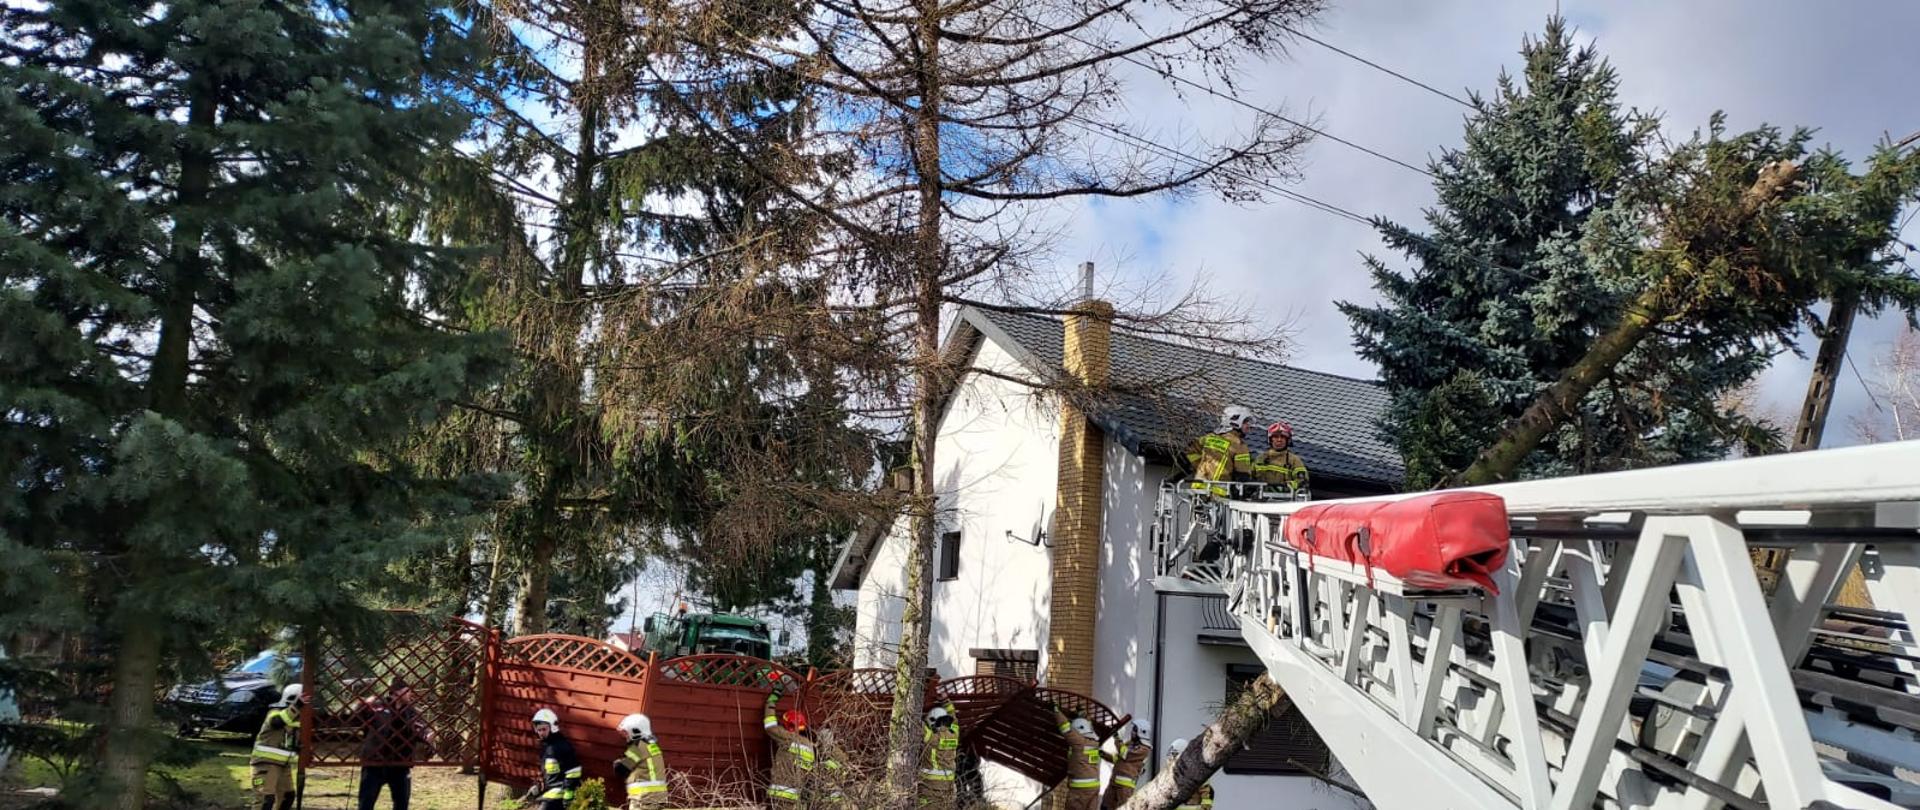 Na zdjęciu widać dom jednorodzinny przy którym pochyliło się drzewo na skutek silnego wiatru. Po prawej stronie domu strażacy przenoszą drewniany parawan, który przeszkadza w działaniach. Przy pochylonym drzewie rozłożona jest strażacka drabina mechaniczna